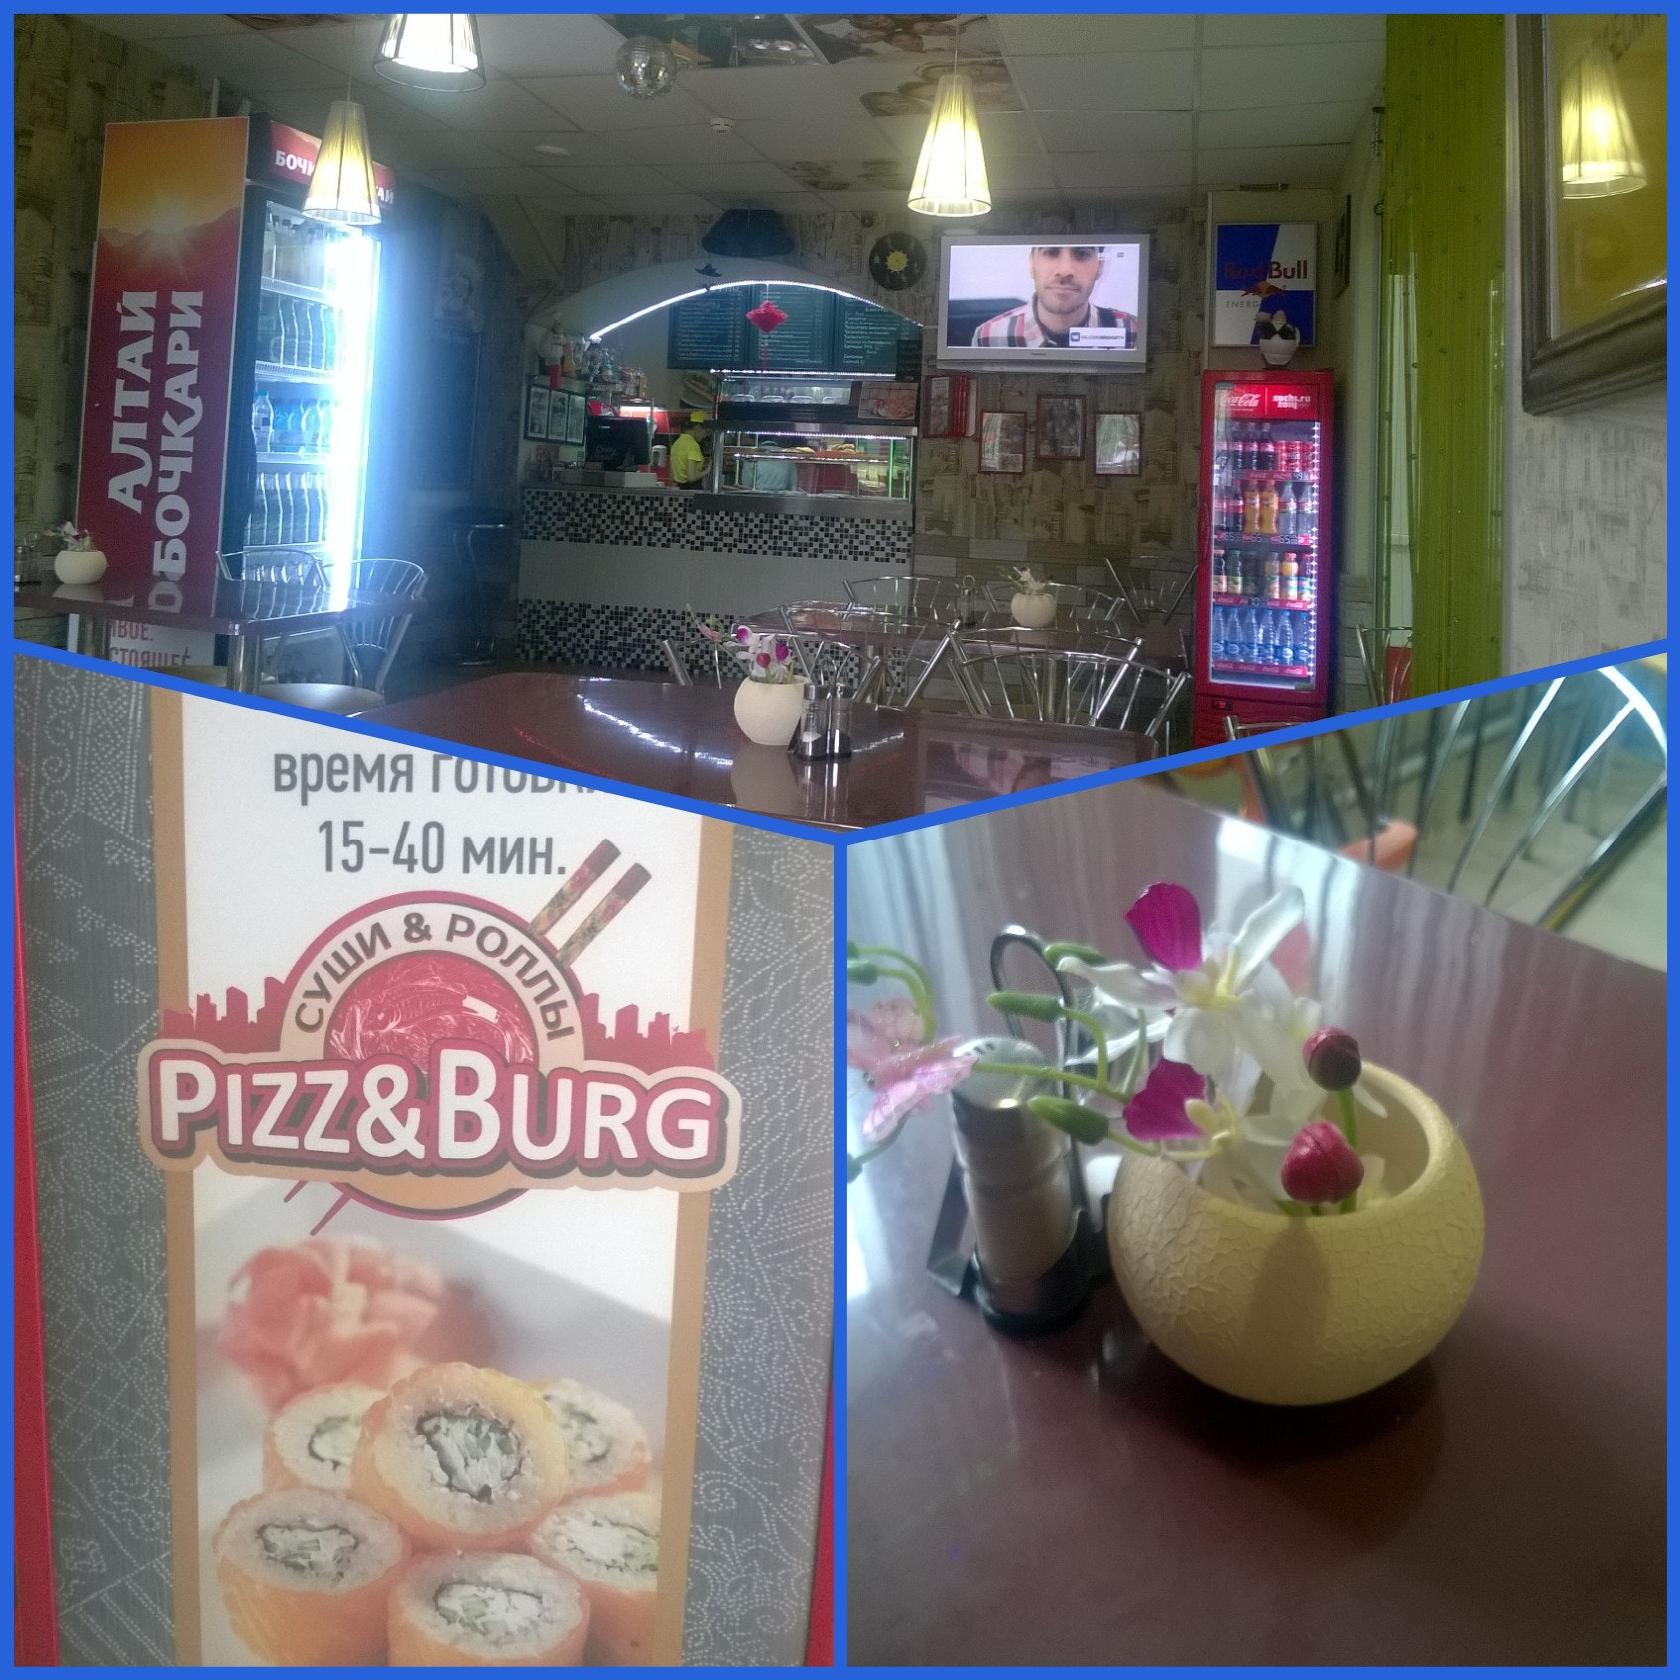 Pizz&Burg